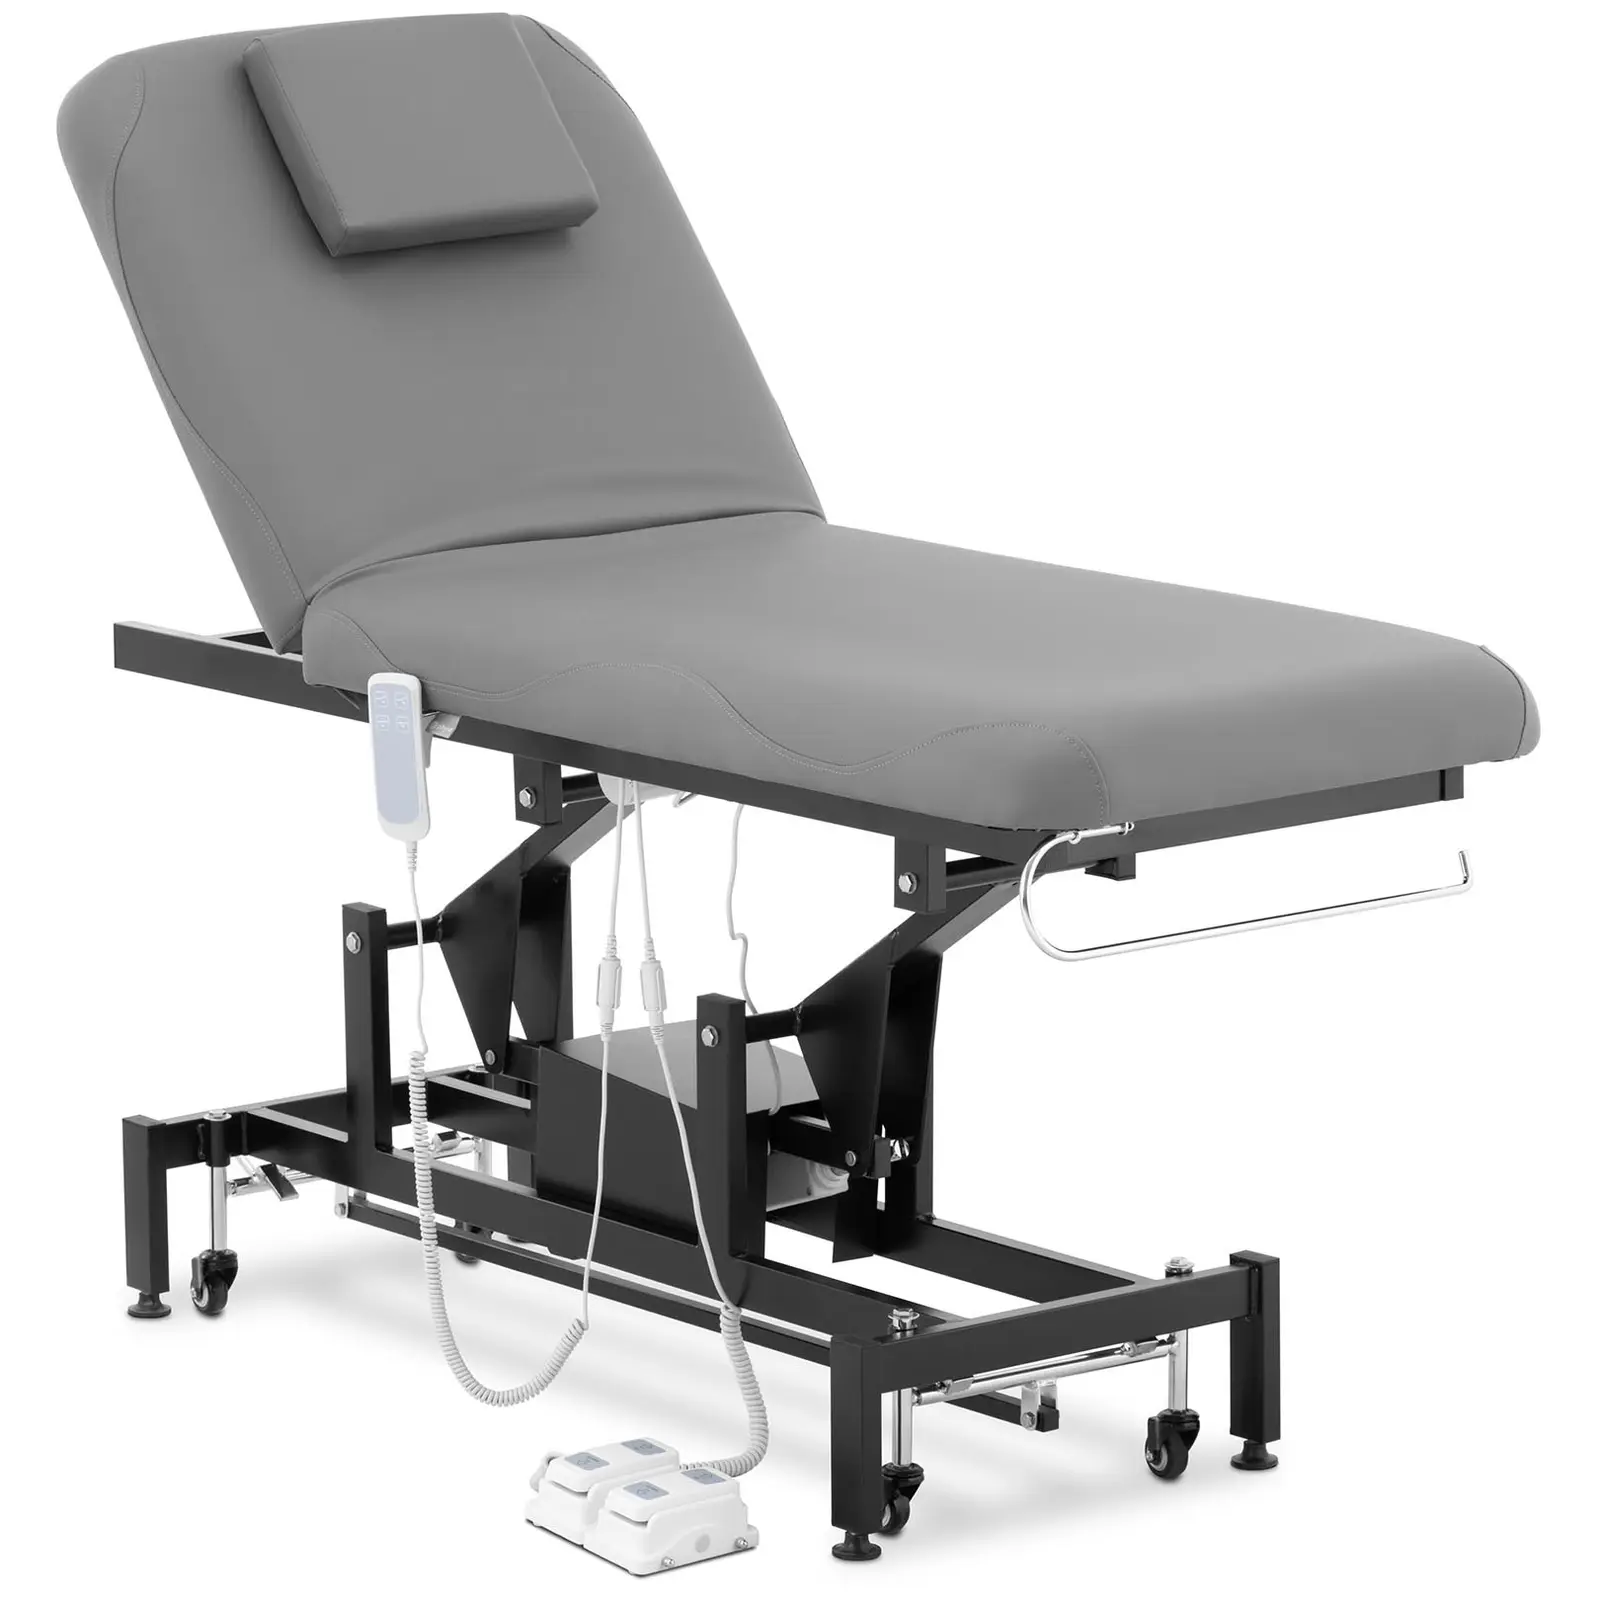 Table de massage électrique - 2 moteurs - 200 kg - Noir, Gris